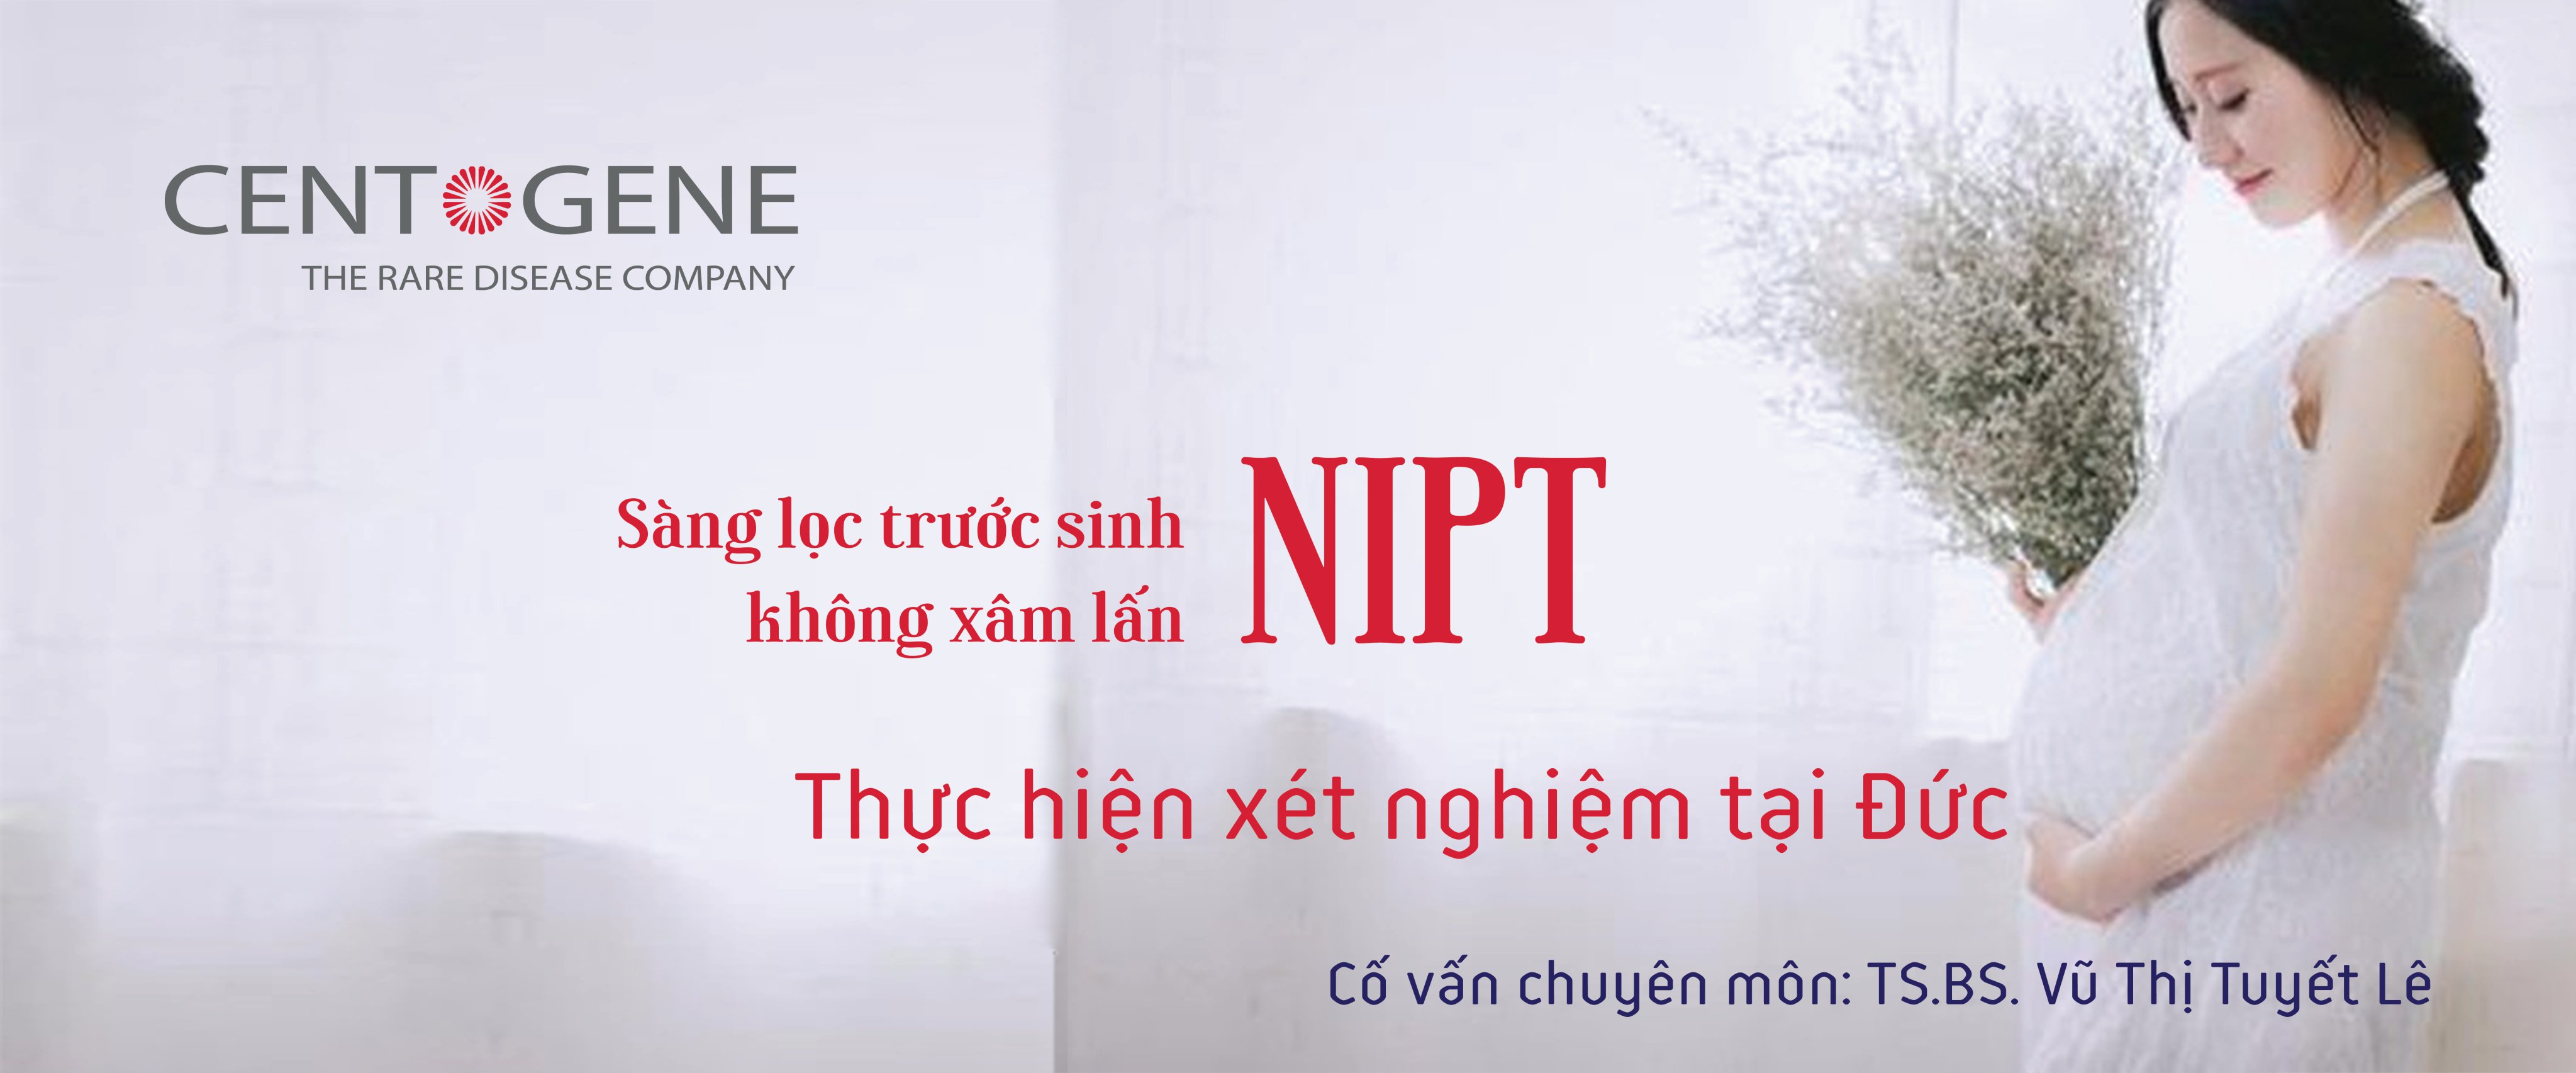 Xét nghiệm sàng lọc trước sinh NIPT - Phòng khám Medic